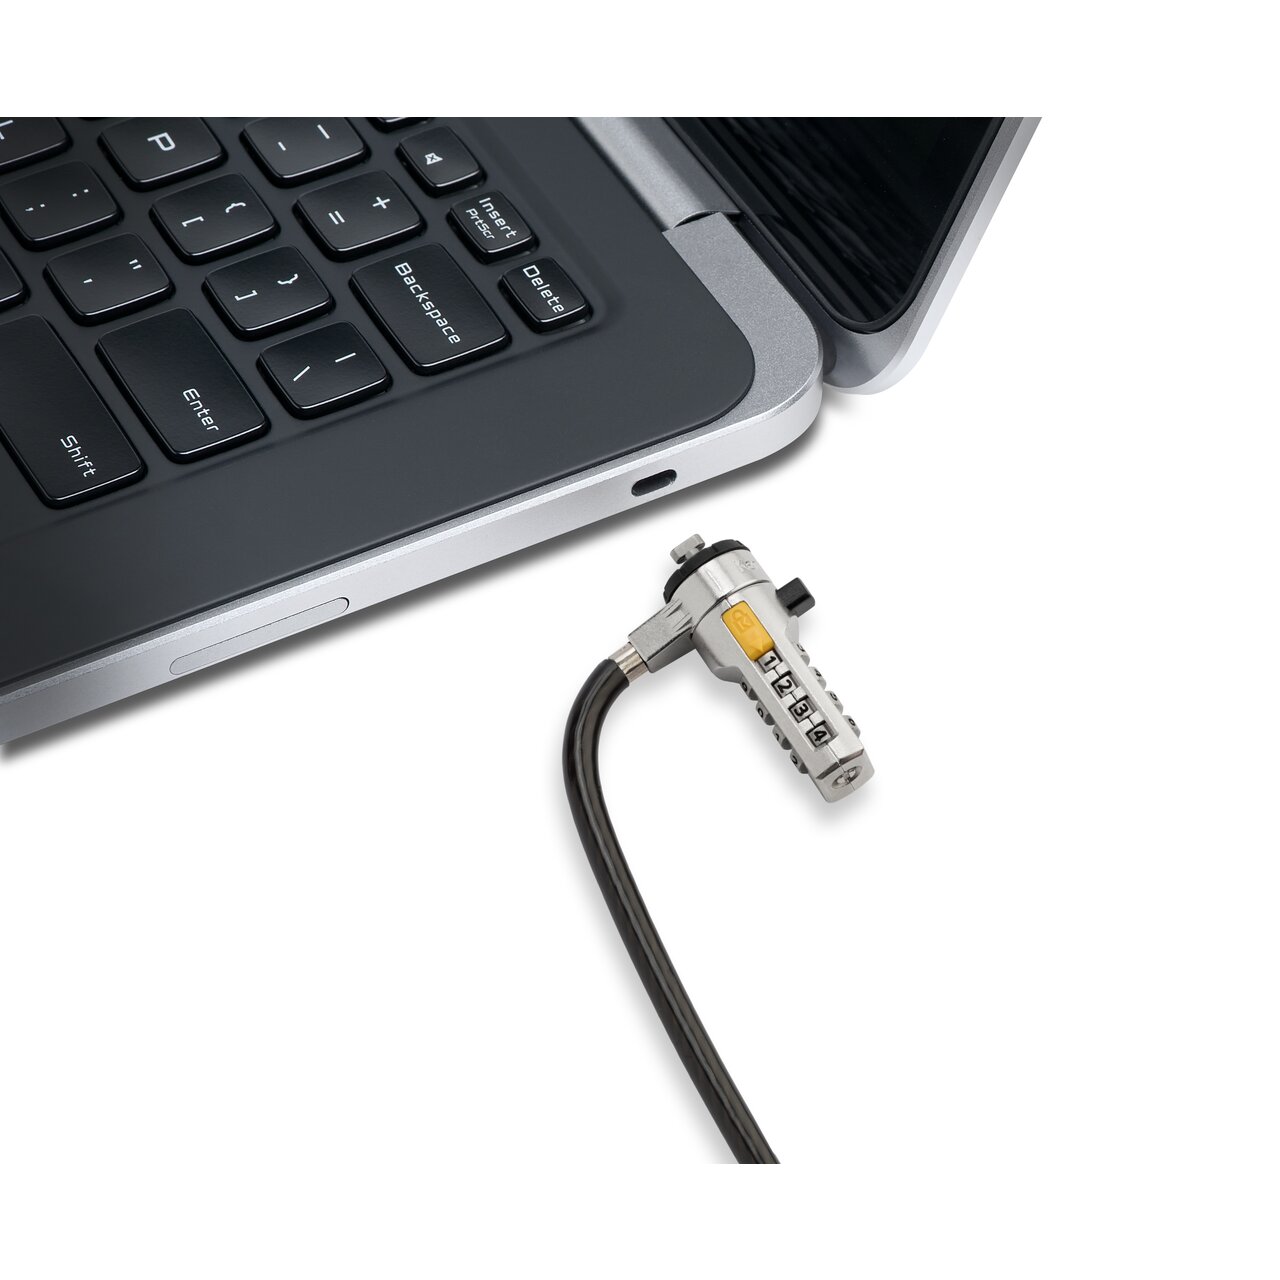 Pengunci laptop dengan menggunakan kabel besi